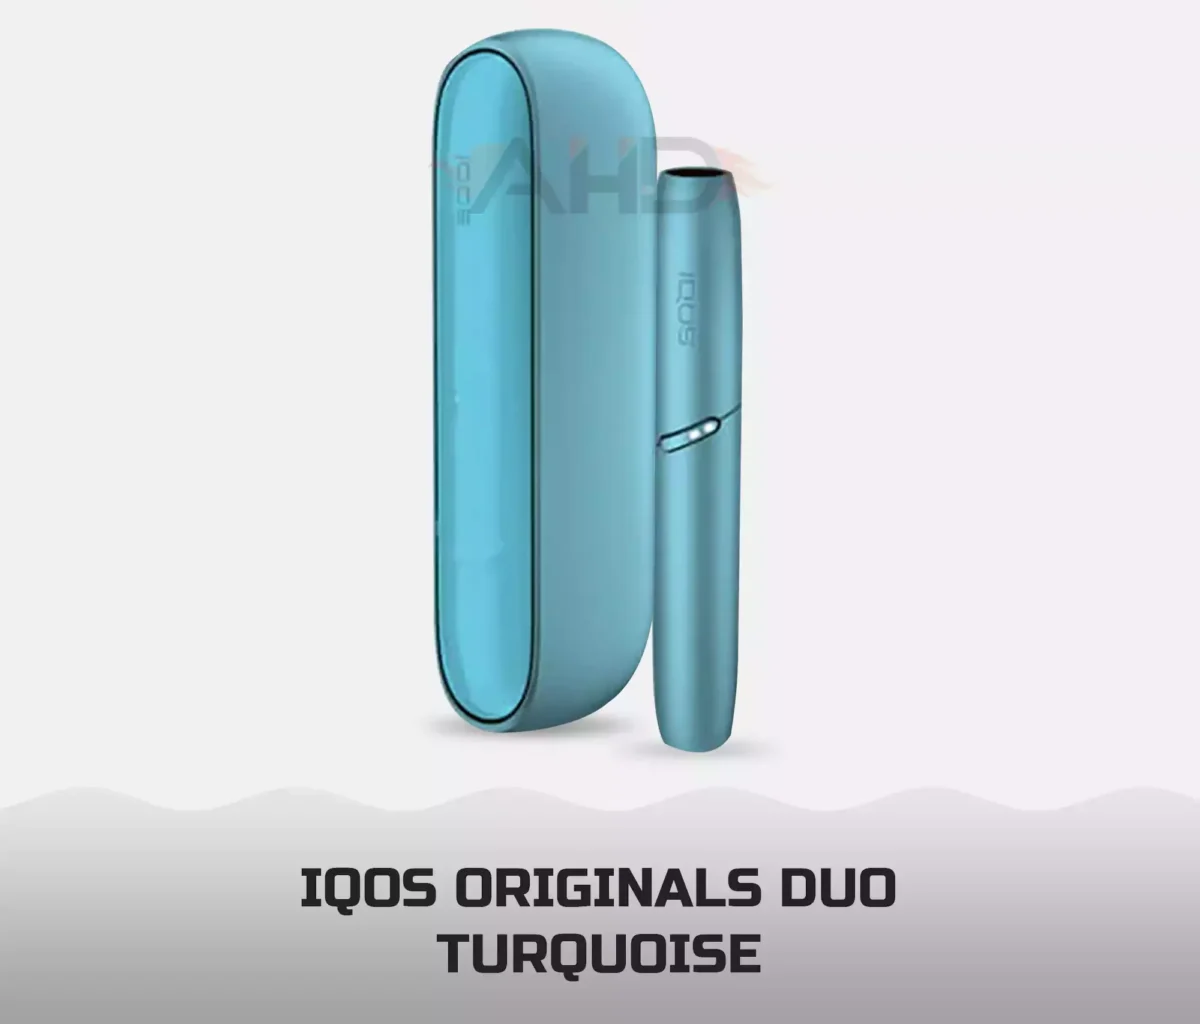 Iqos Original Duo Turquoise